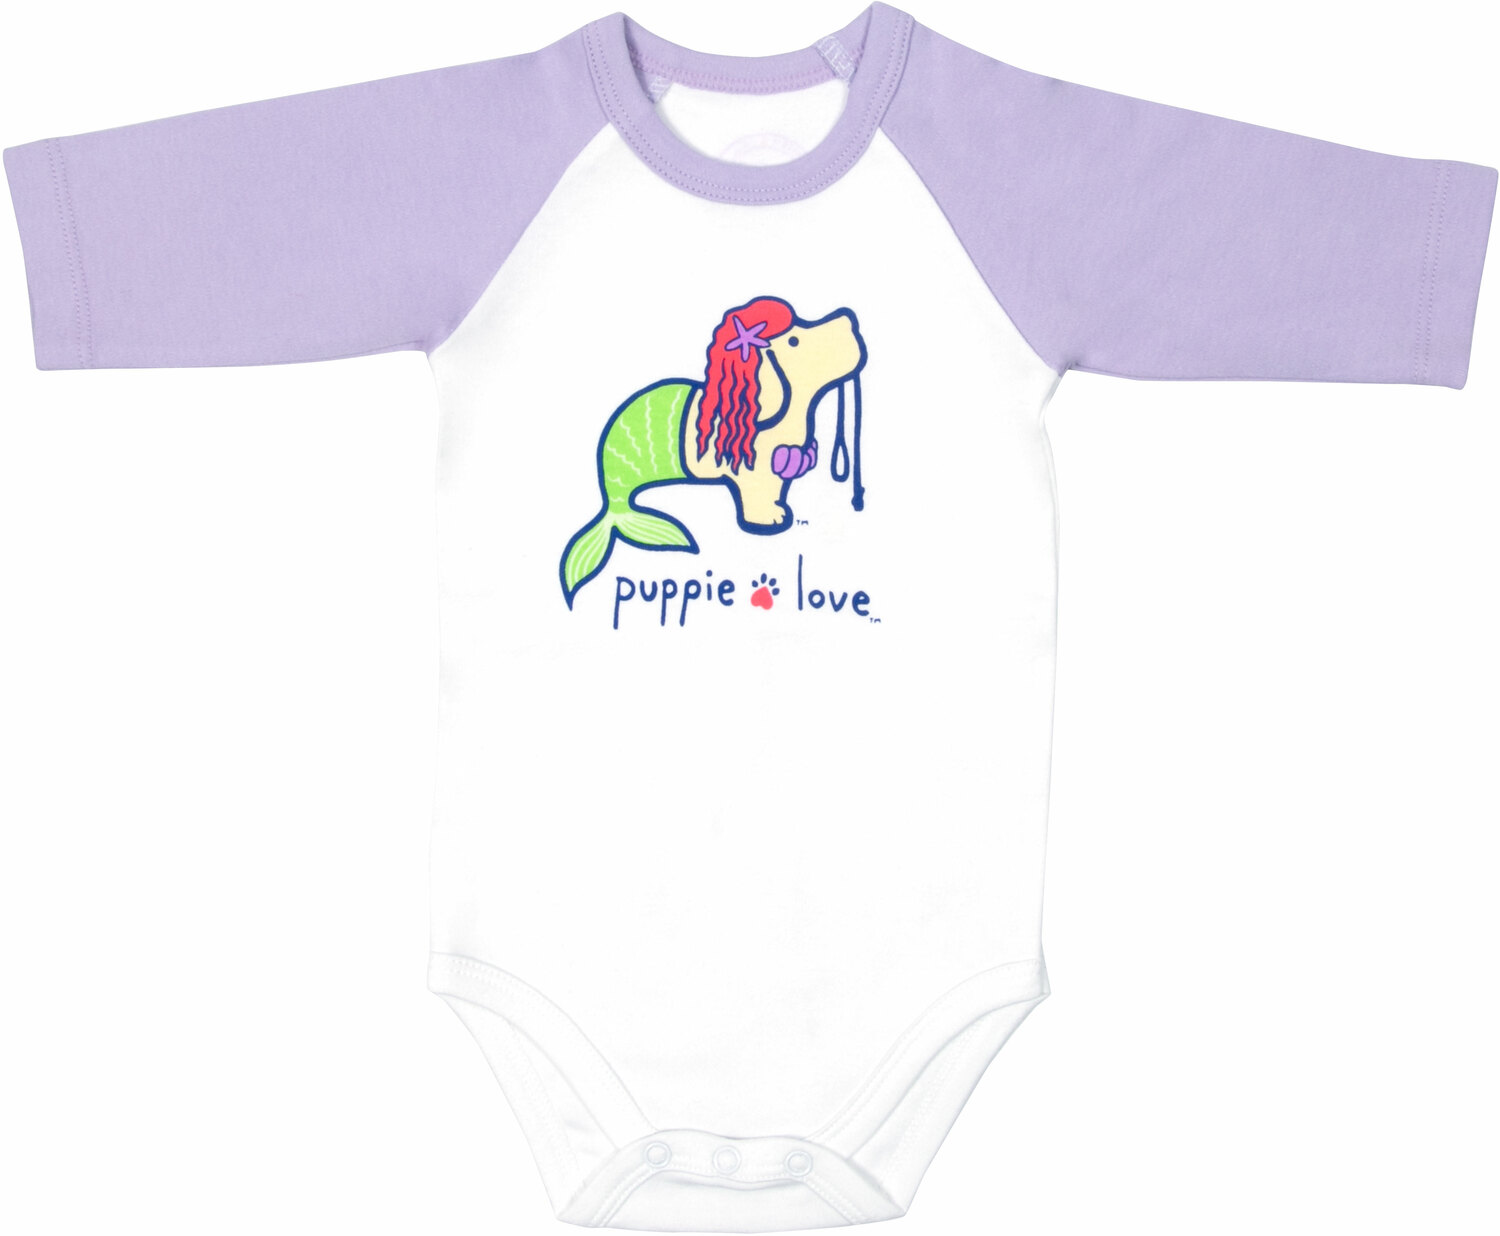 Mermaid by Puppie Love - Mermaid - 6-12 Months
3/4 Length Purple Sleeve Onesie